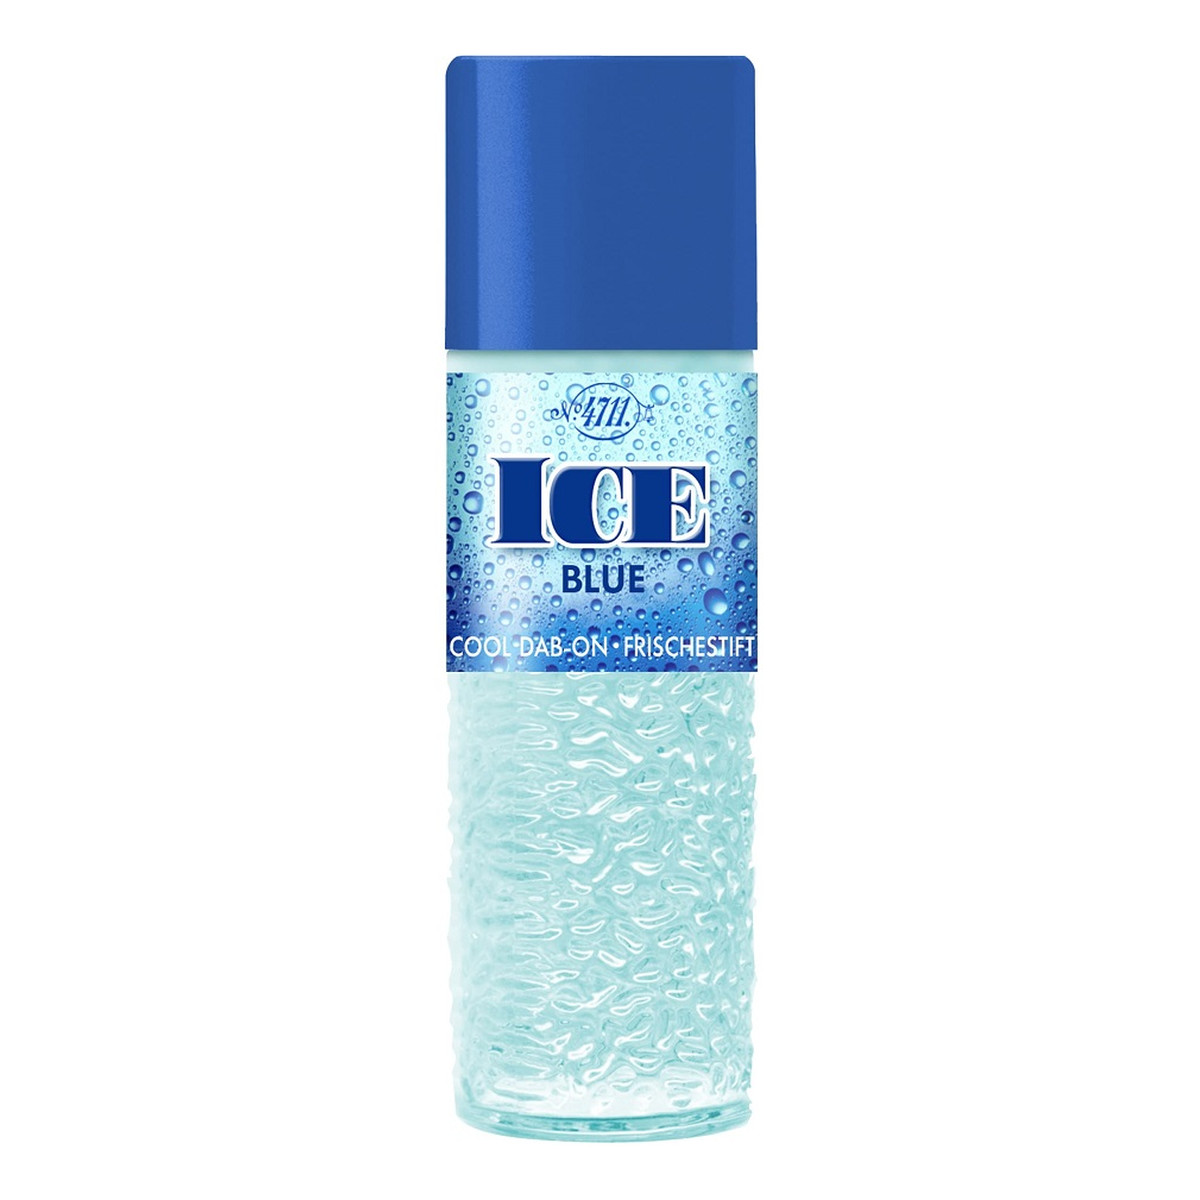 4711 Ice blue cool dab-on odświeżający sztyft 40ml